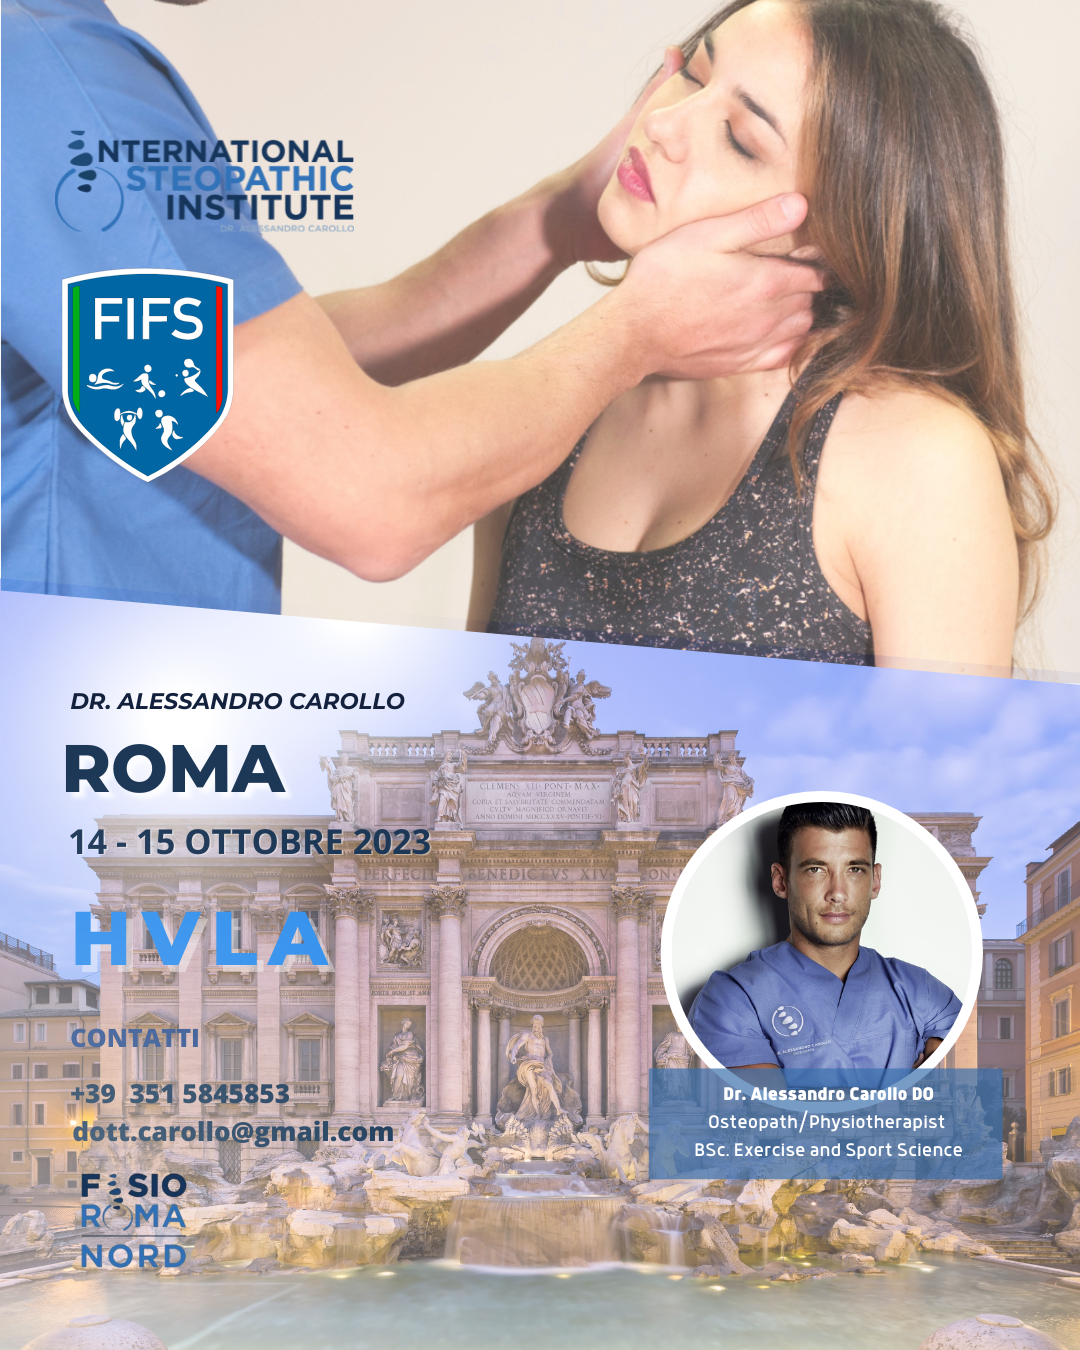 HVLA - Roma - Istituto Osteopatico - Dr. Alessandro Carollo